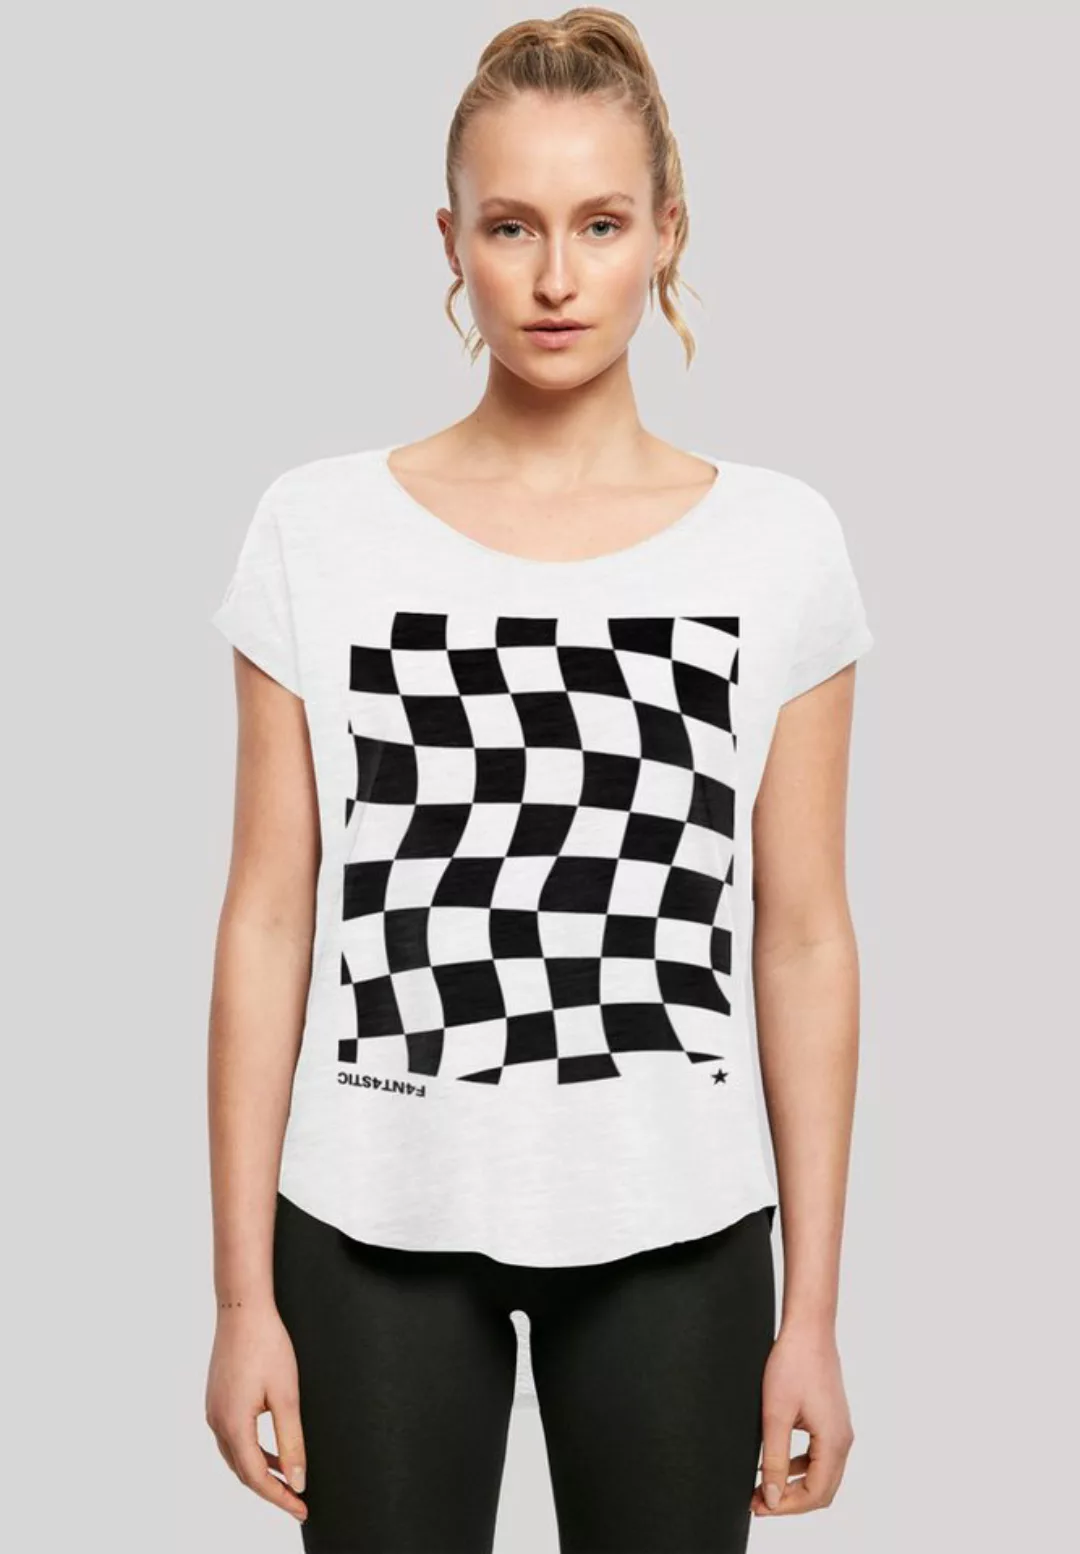 F4NT4STIC T-Shirt Wavy Schach Muster Print günstig online kaufen